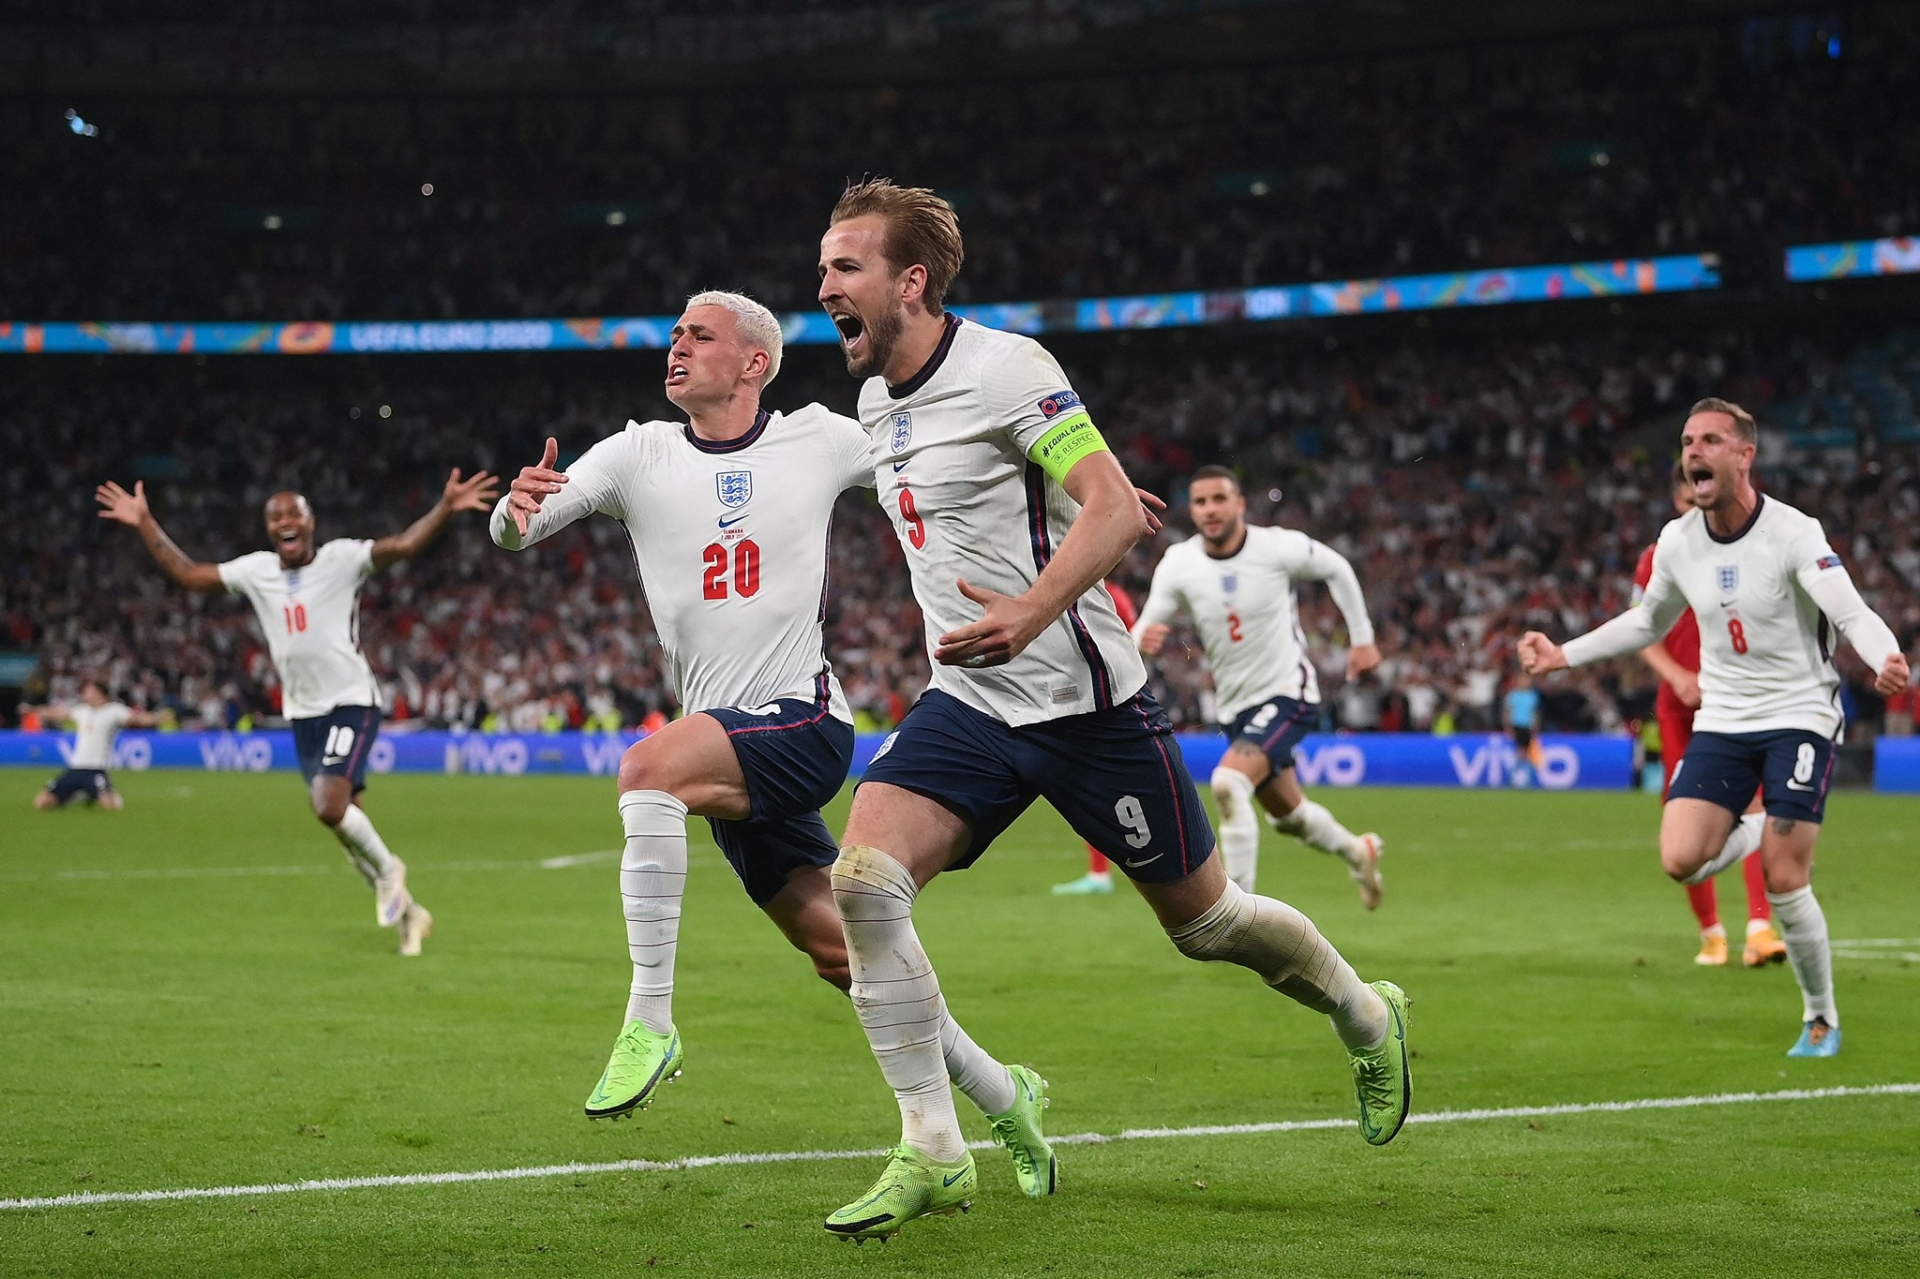 Kane và Phil Foden ăn mừng bàn thắng. Đây cũng là bộ mặt của tuyển Anh ở giải lần này, họ là sự kết hợp của những cầu thủ đủ kinh nghiệm và càng thi đấu càng dày bản lĩnh như Kane, và những sao trẻ như Phil Foden